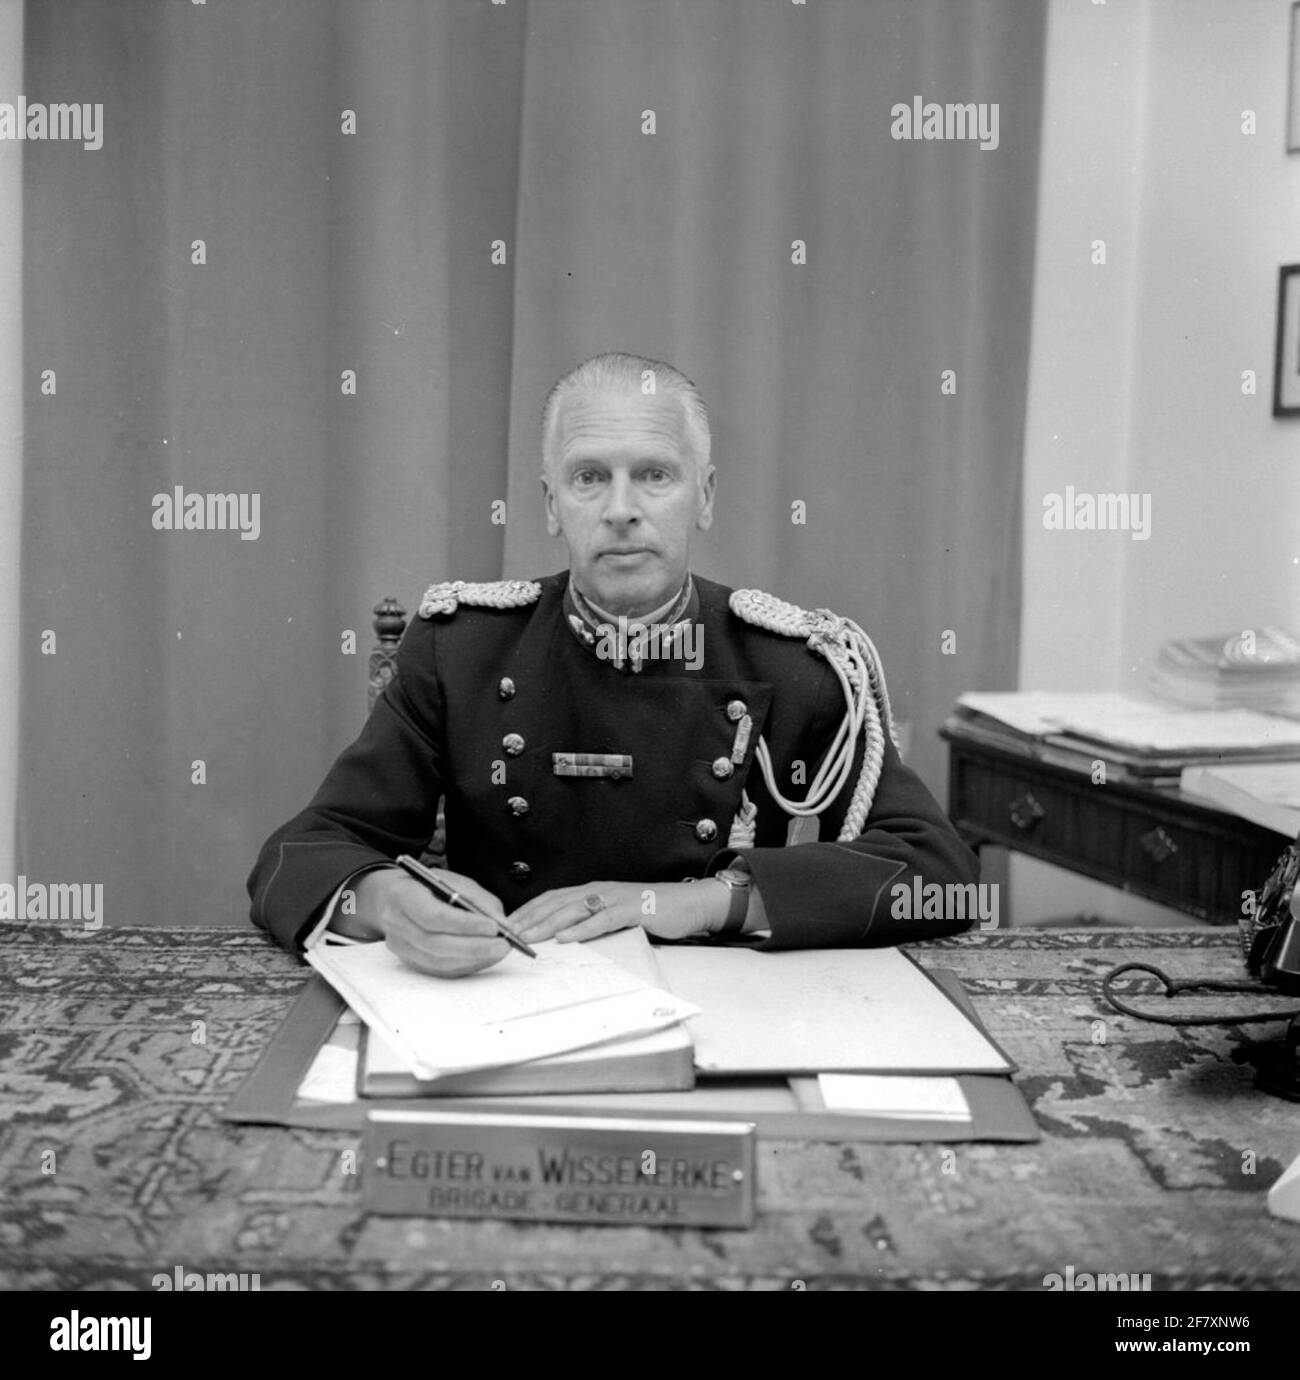 Ritratto di brigadier a.j.f.m. Egter van Wisskerke, Comandante Royal Netherlands Marechaussee, dietro la sua scrivania. Foto Stock